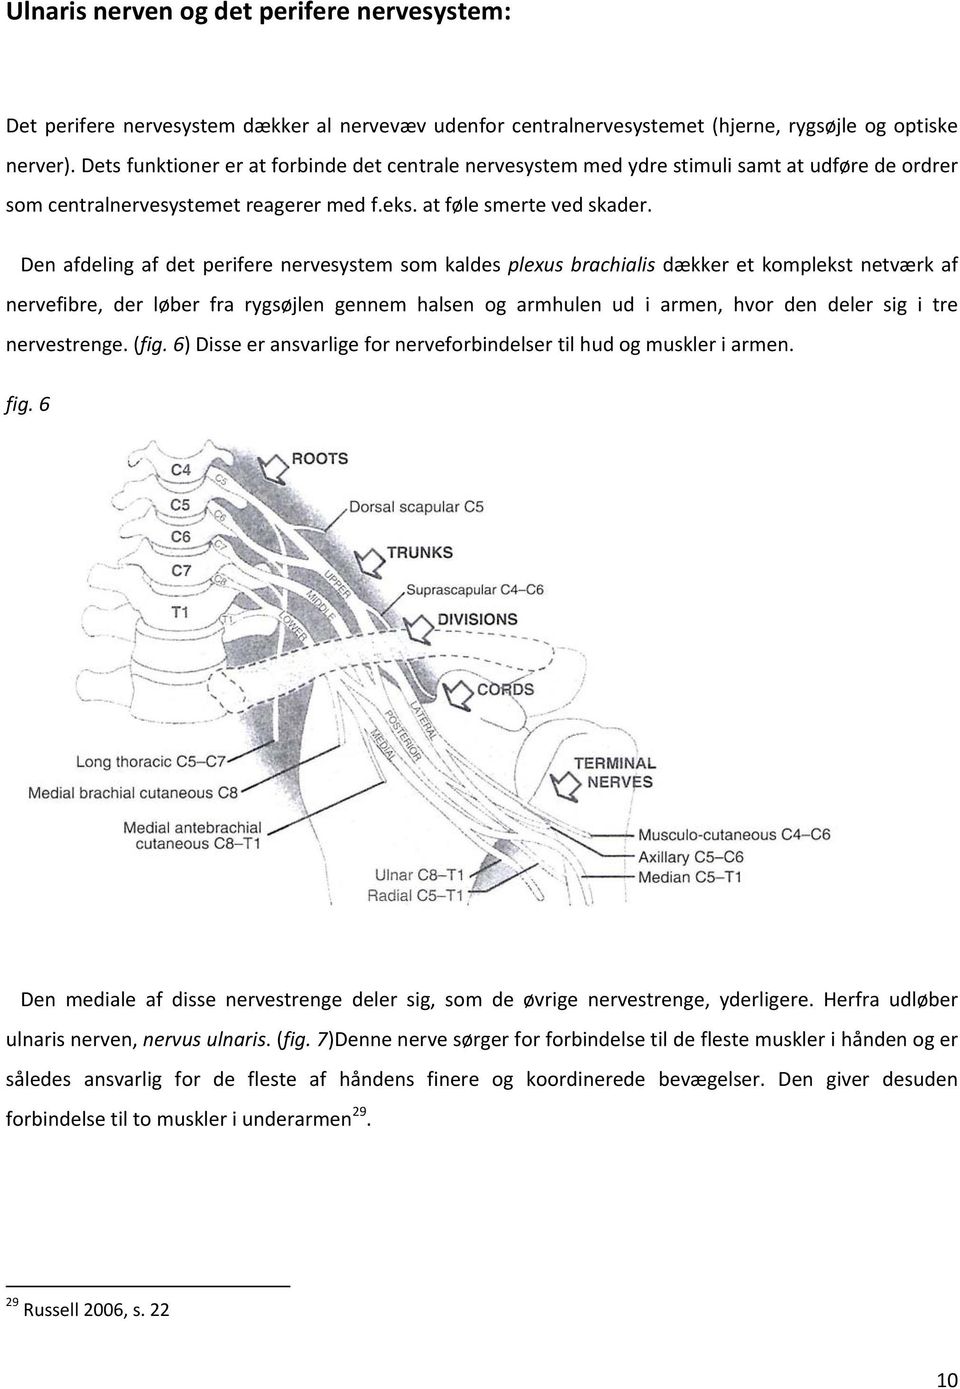 Den afdeling af det perifere nervesystem som kaldes plexus brachialis dækker et komplekst netværk af nervefibre, der løber fra rygsøjlen gennem halsen og armhulen ud i armen, hvor den deler sig i tre